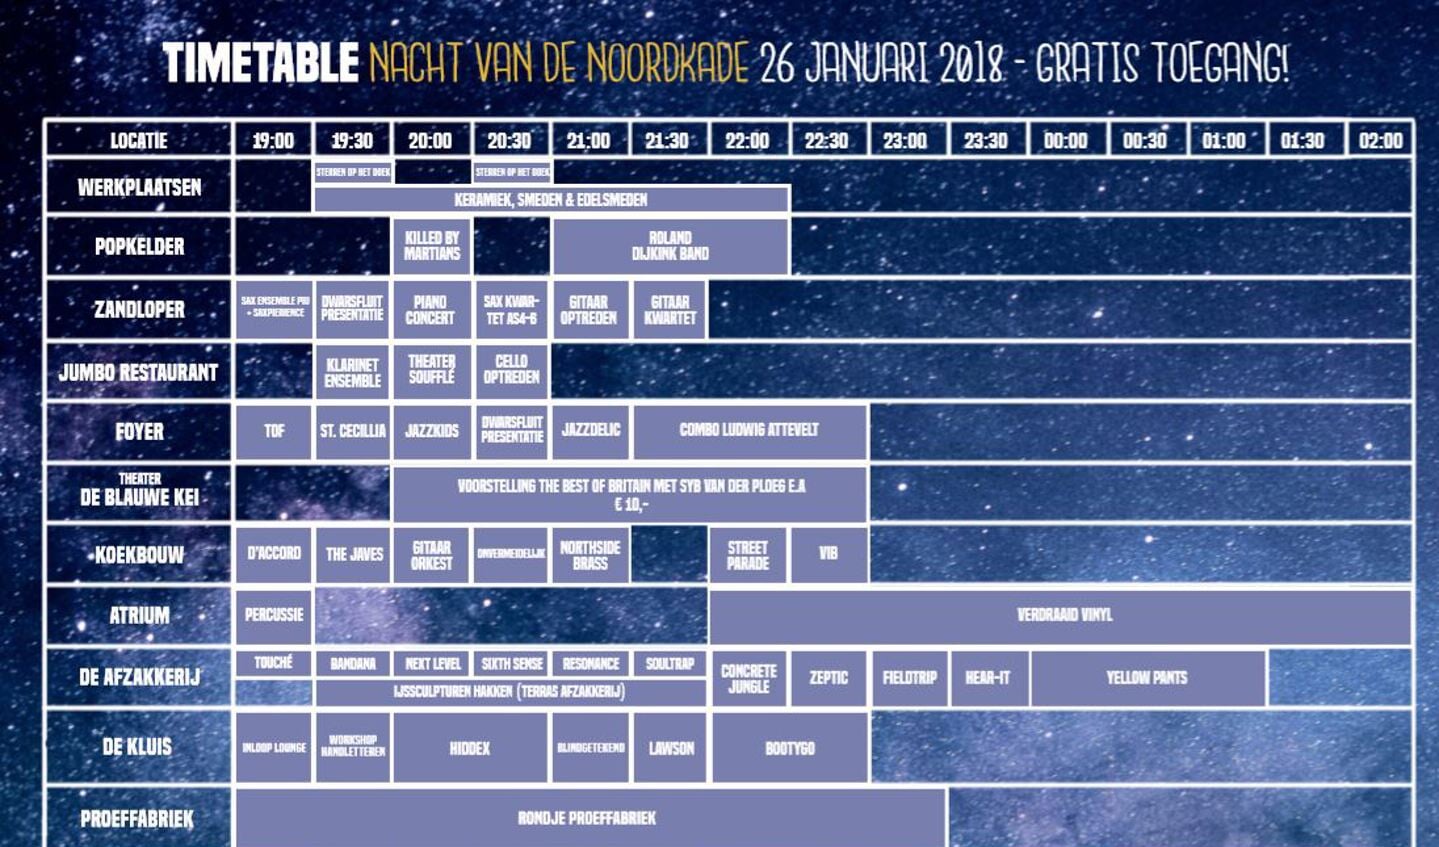 Timetable Nacht van de Noordkade.